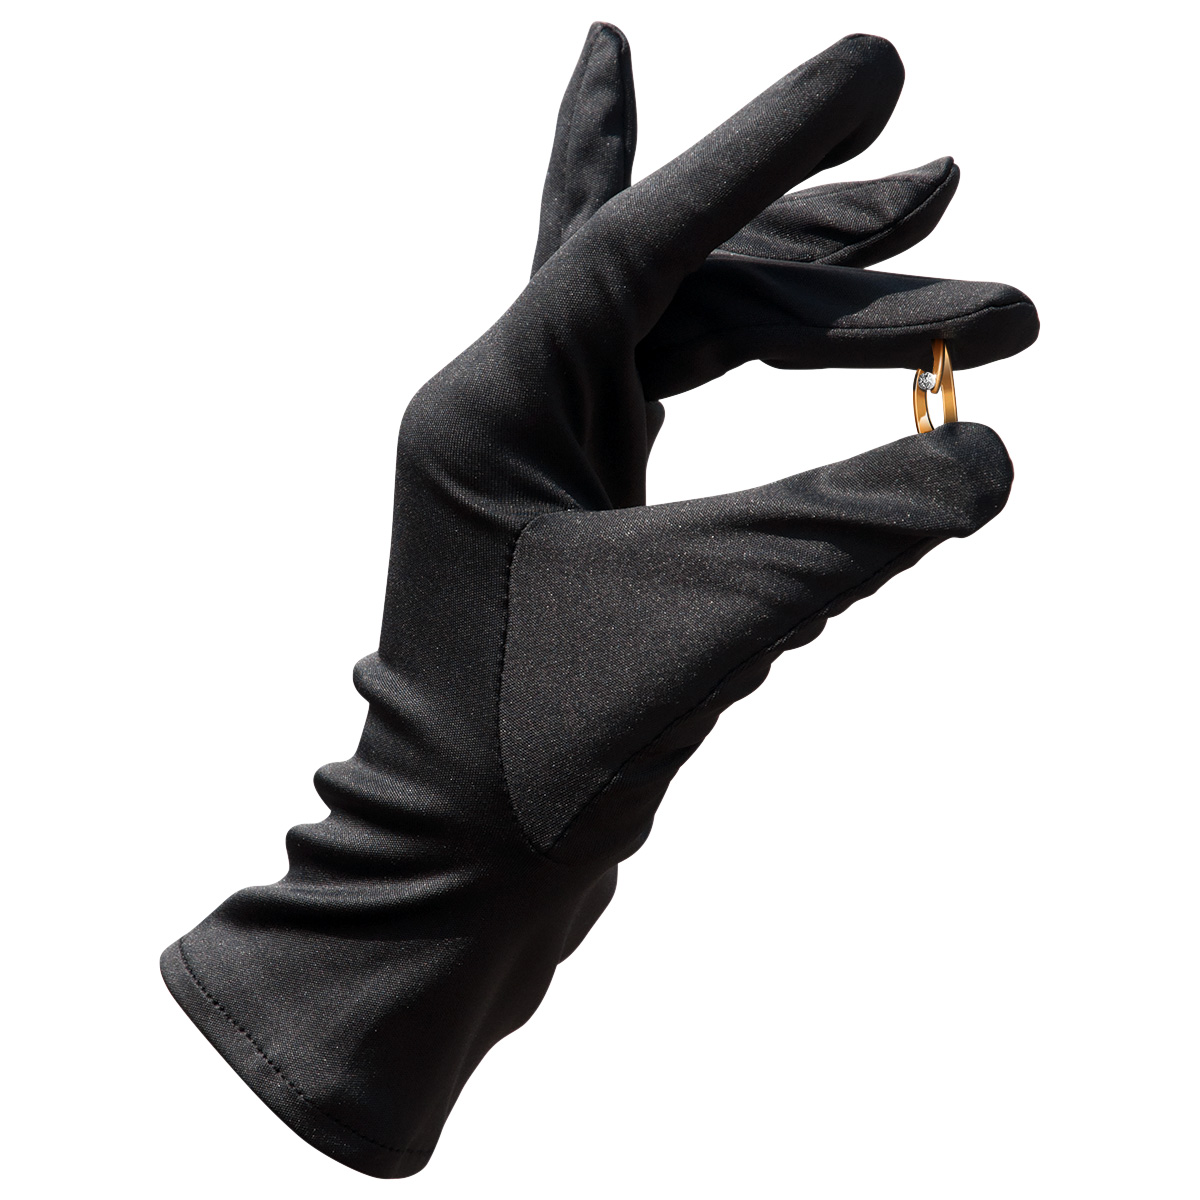 Mikrofaser Handschuh-Paar Haute Couture, schwarz, Größe M